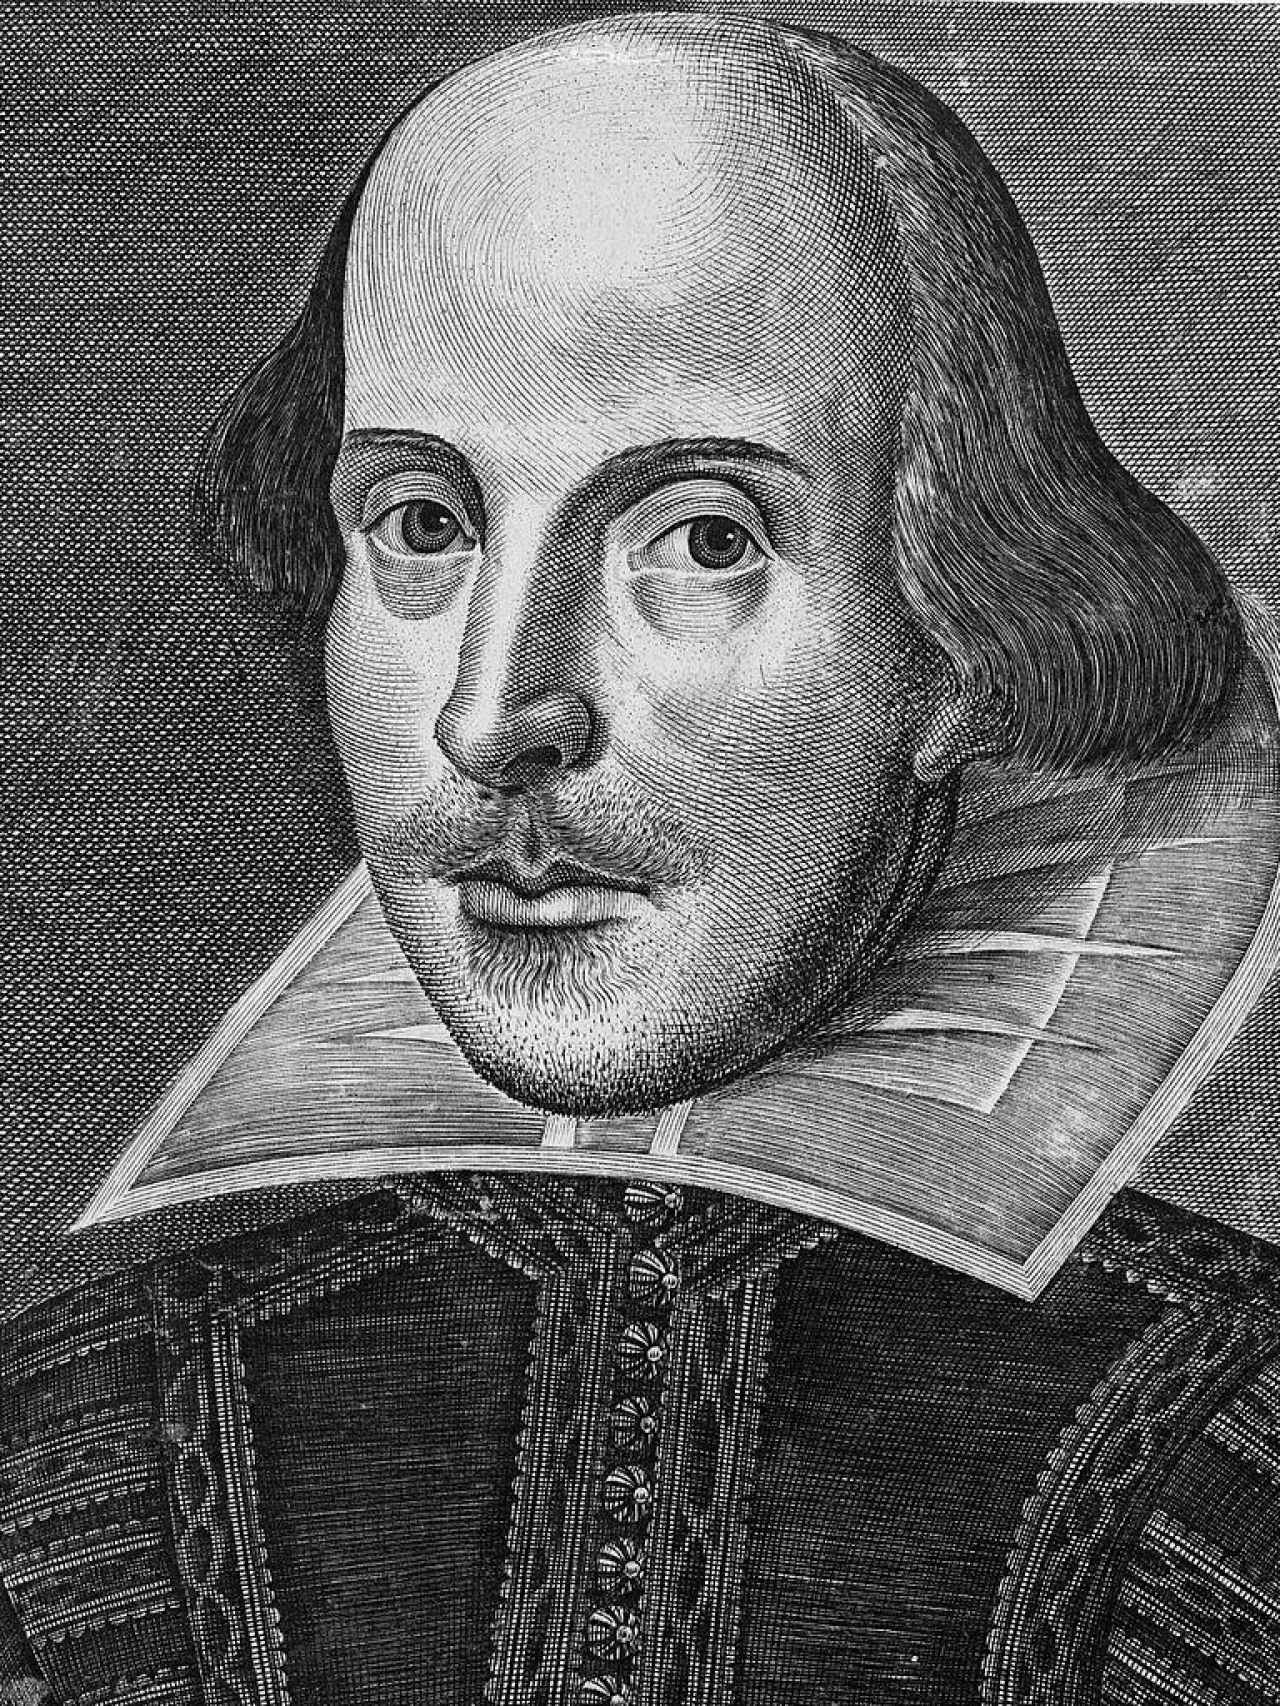 Retrato de William Shakespeare del 'First Folio' (1623)